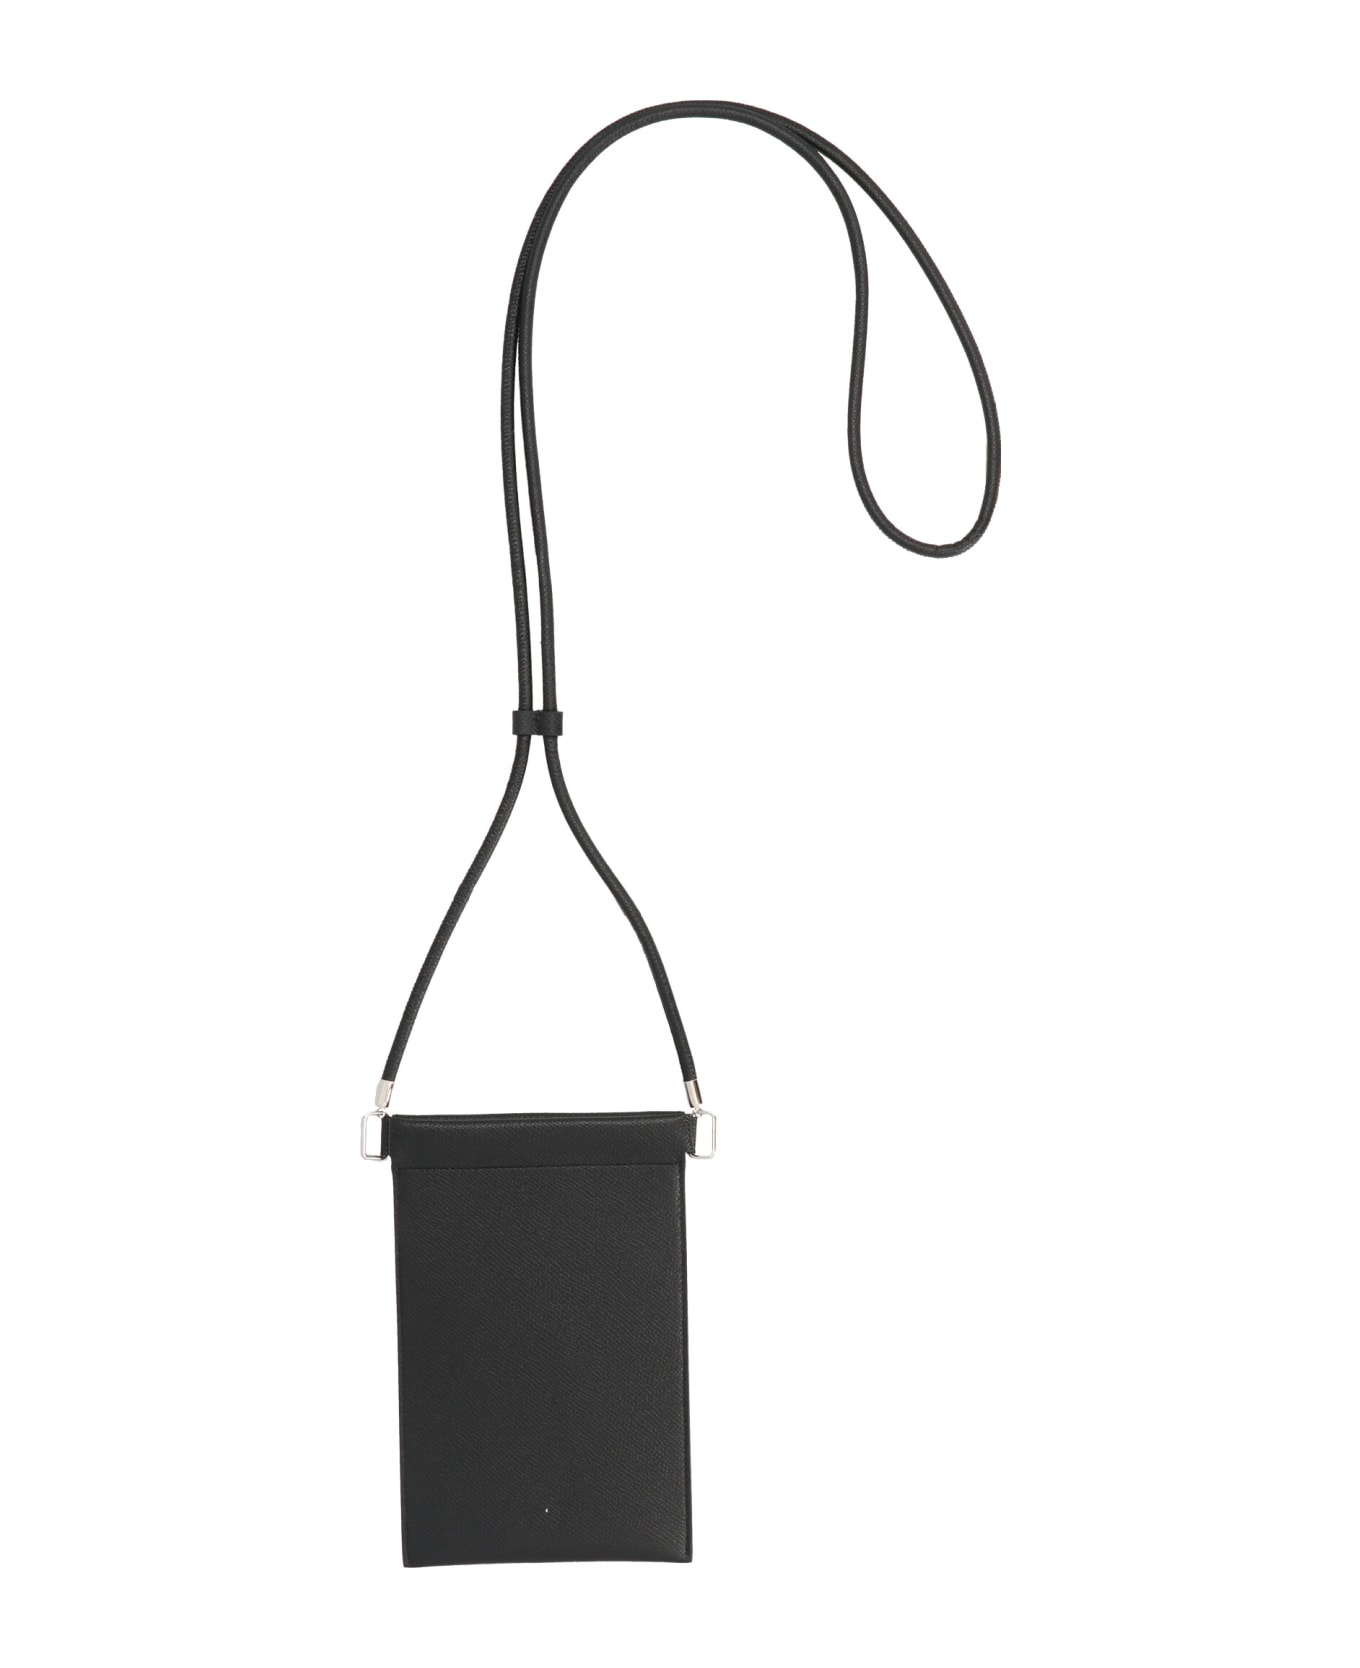 Maison Margiela 'stitching' Smartphone Bag - BLACK